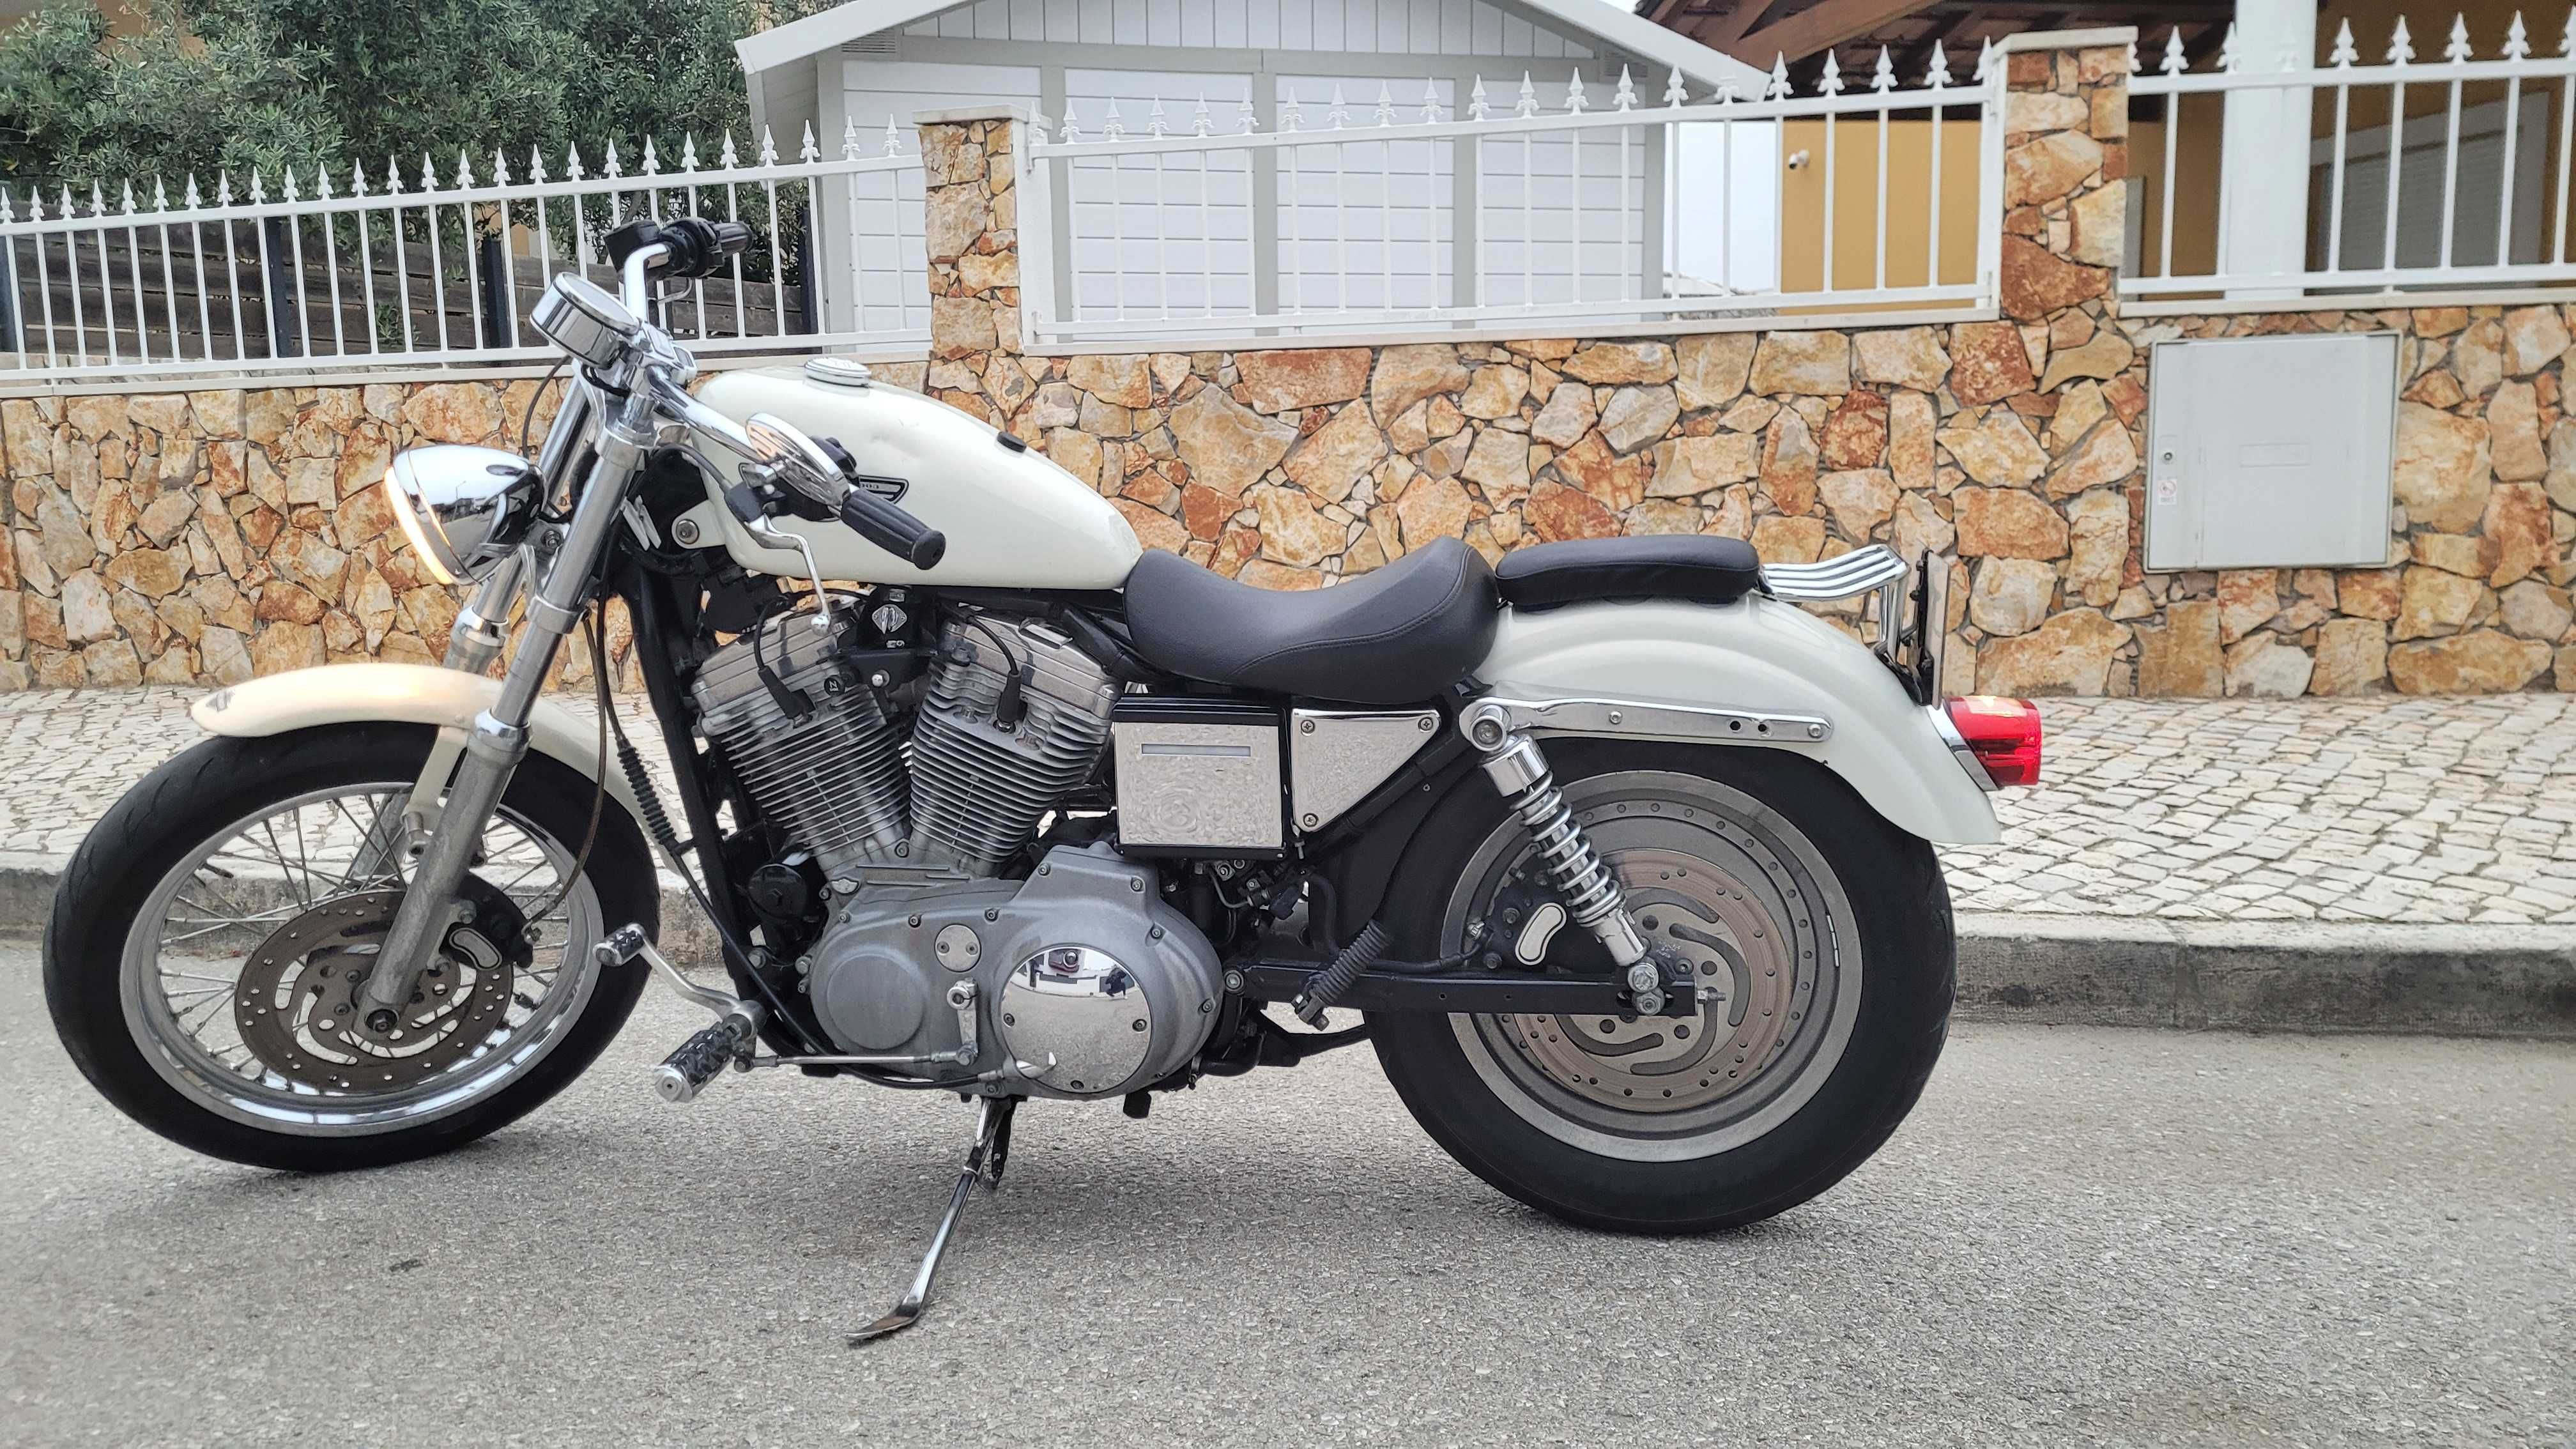 Harley Davidson do Centenario